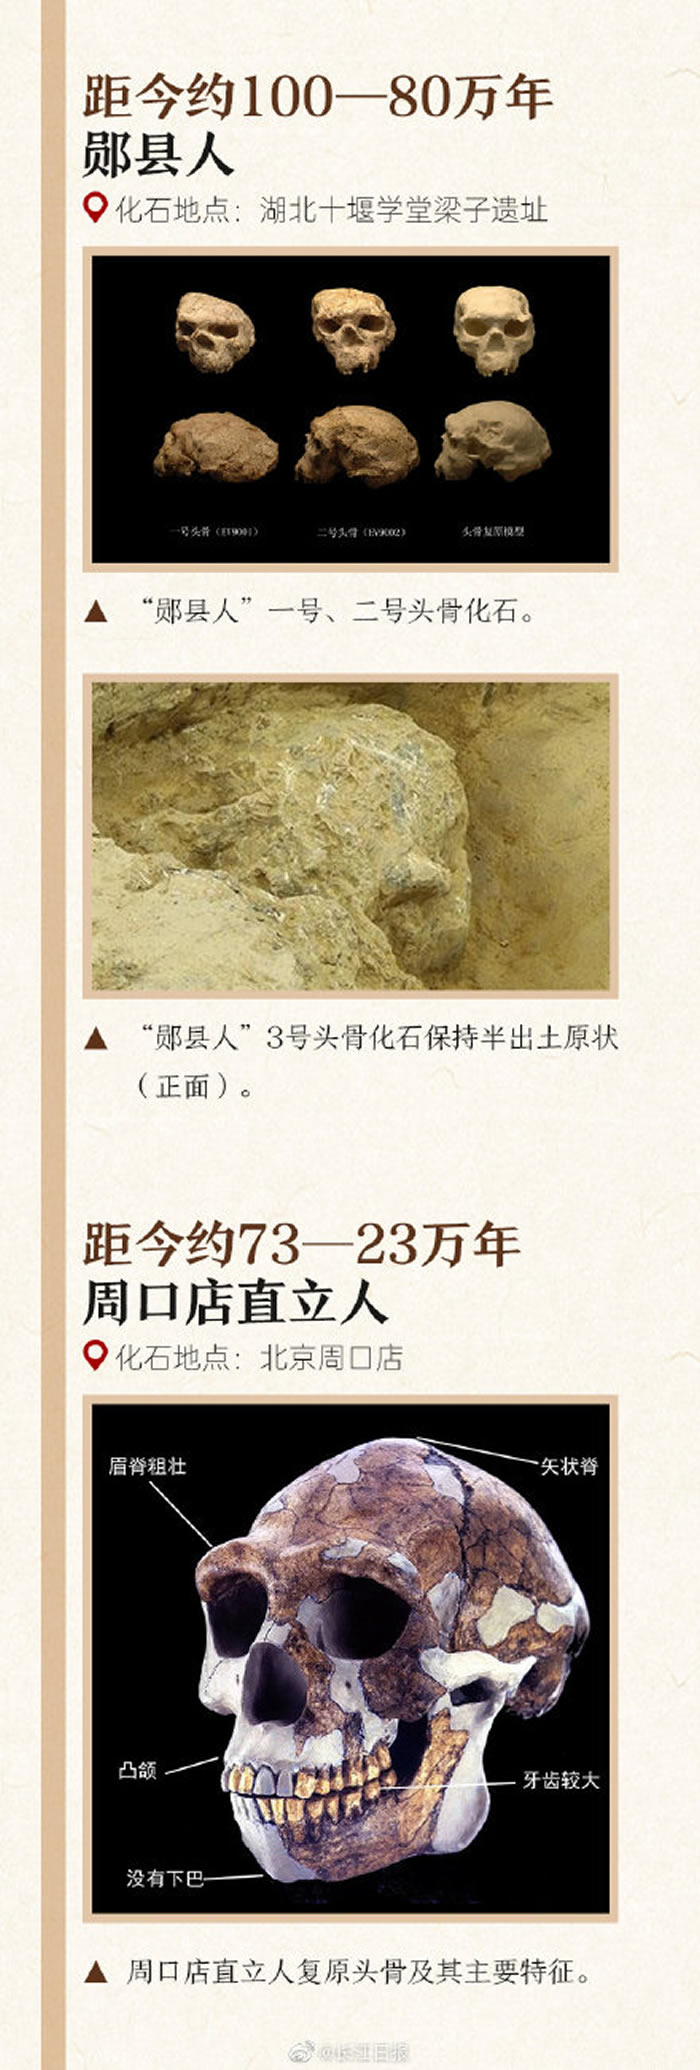 一图认识中国的各种古人类化石